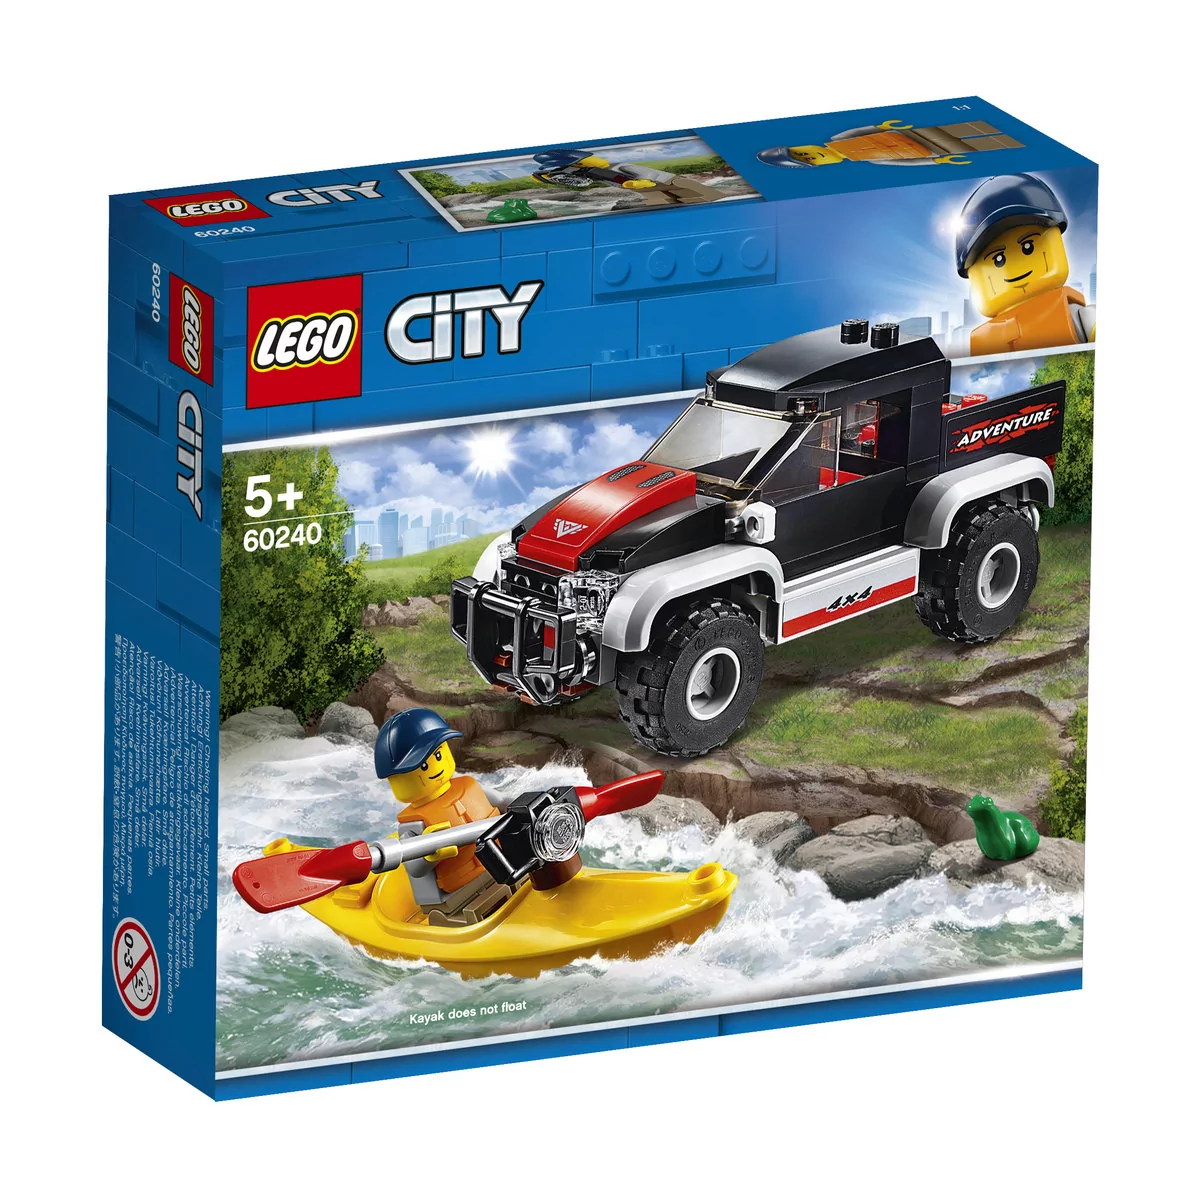 LEGO City Przygoda w kajaku 60240